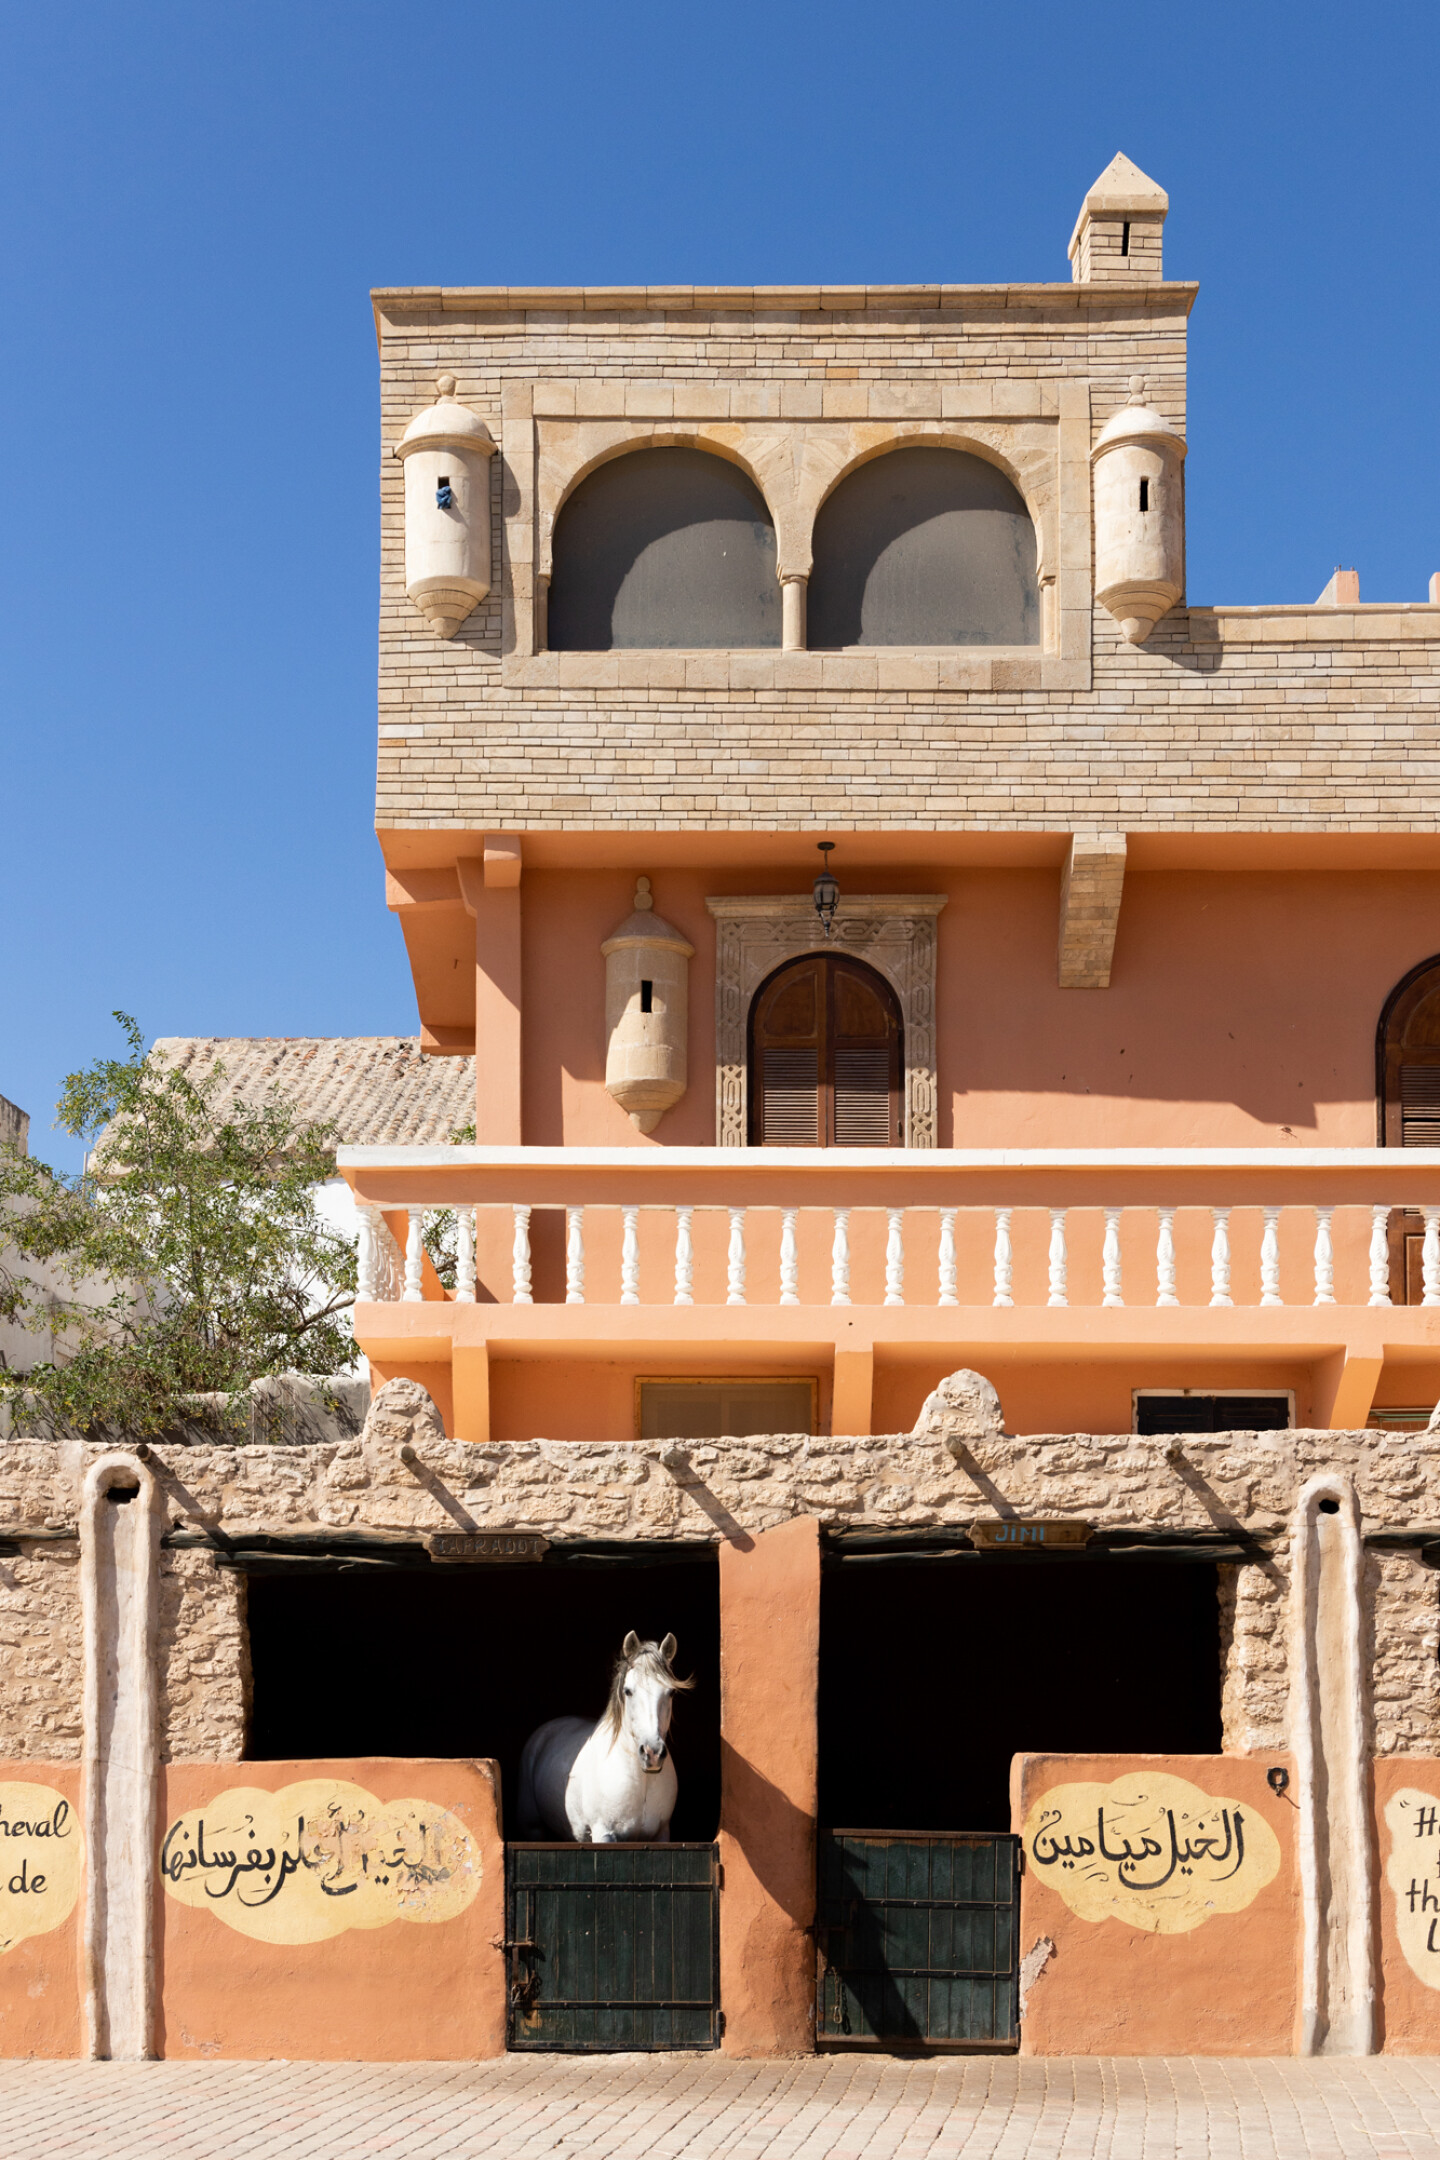 An der Vogelbeobachtung in Essaouira teilnehmen